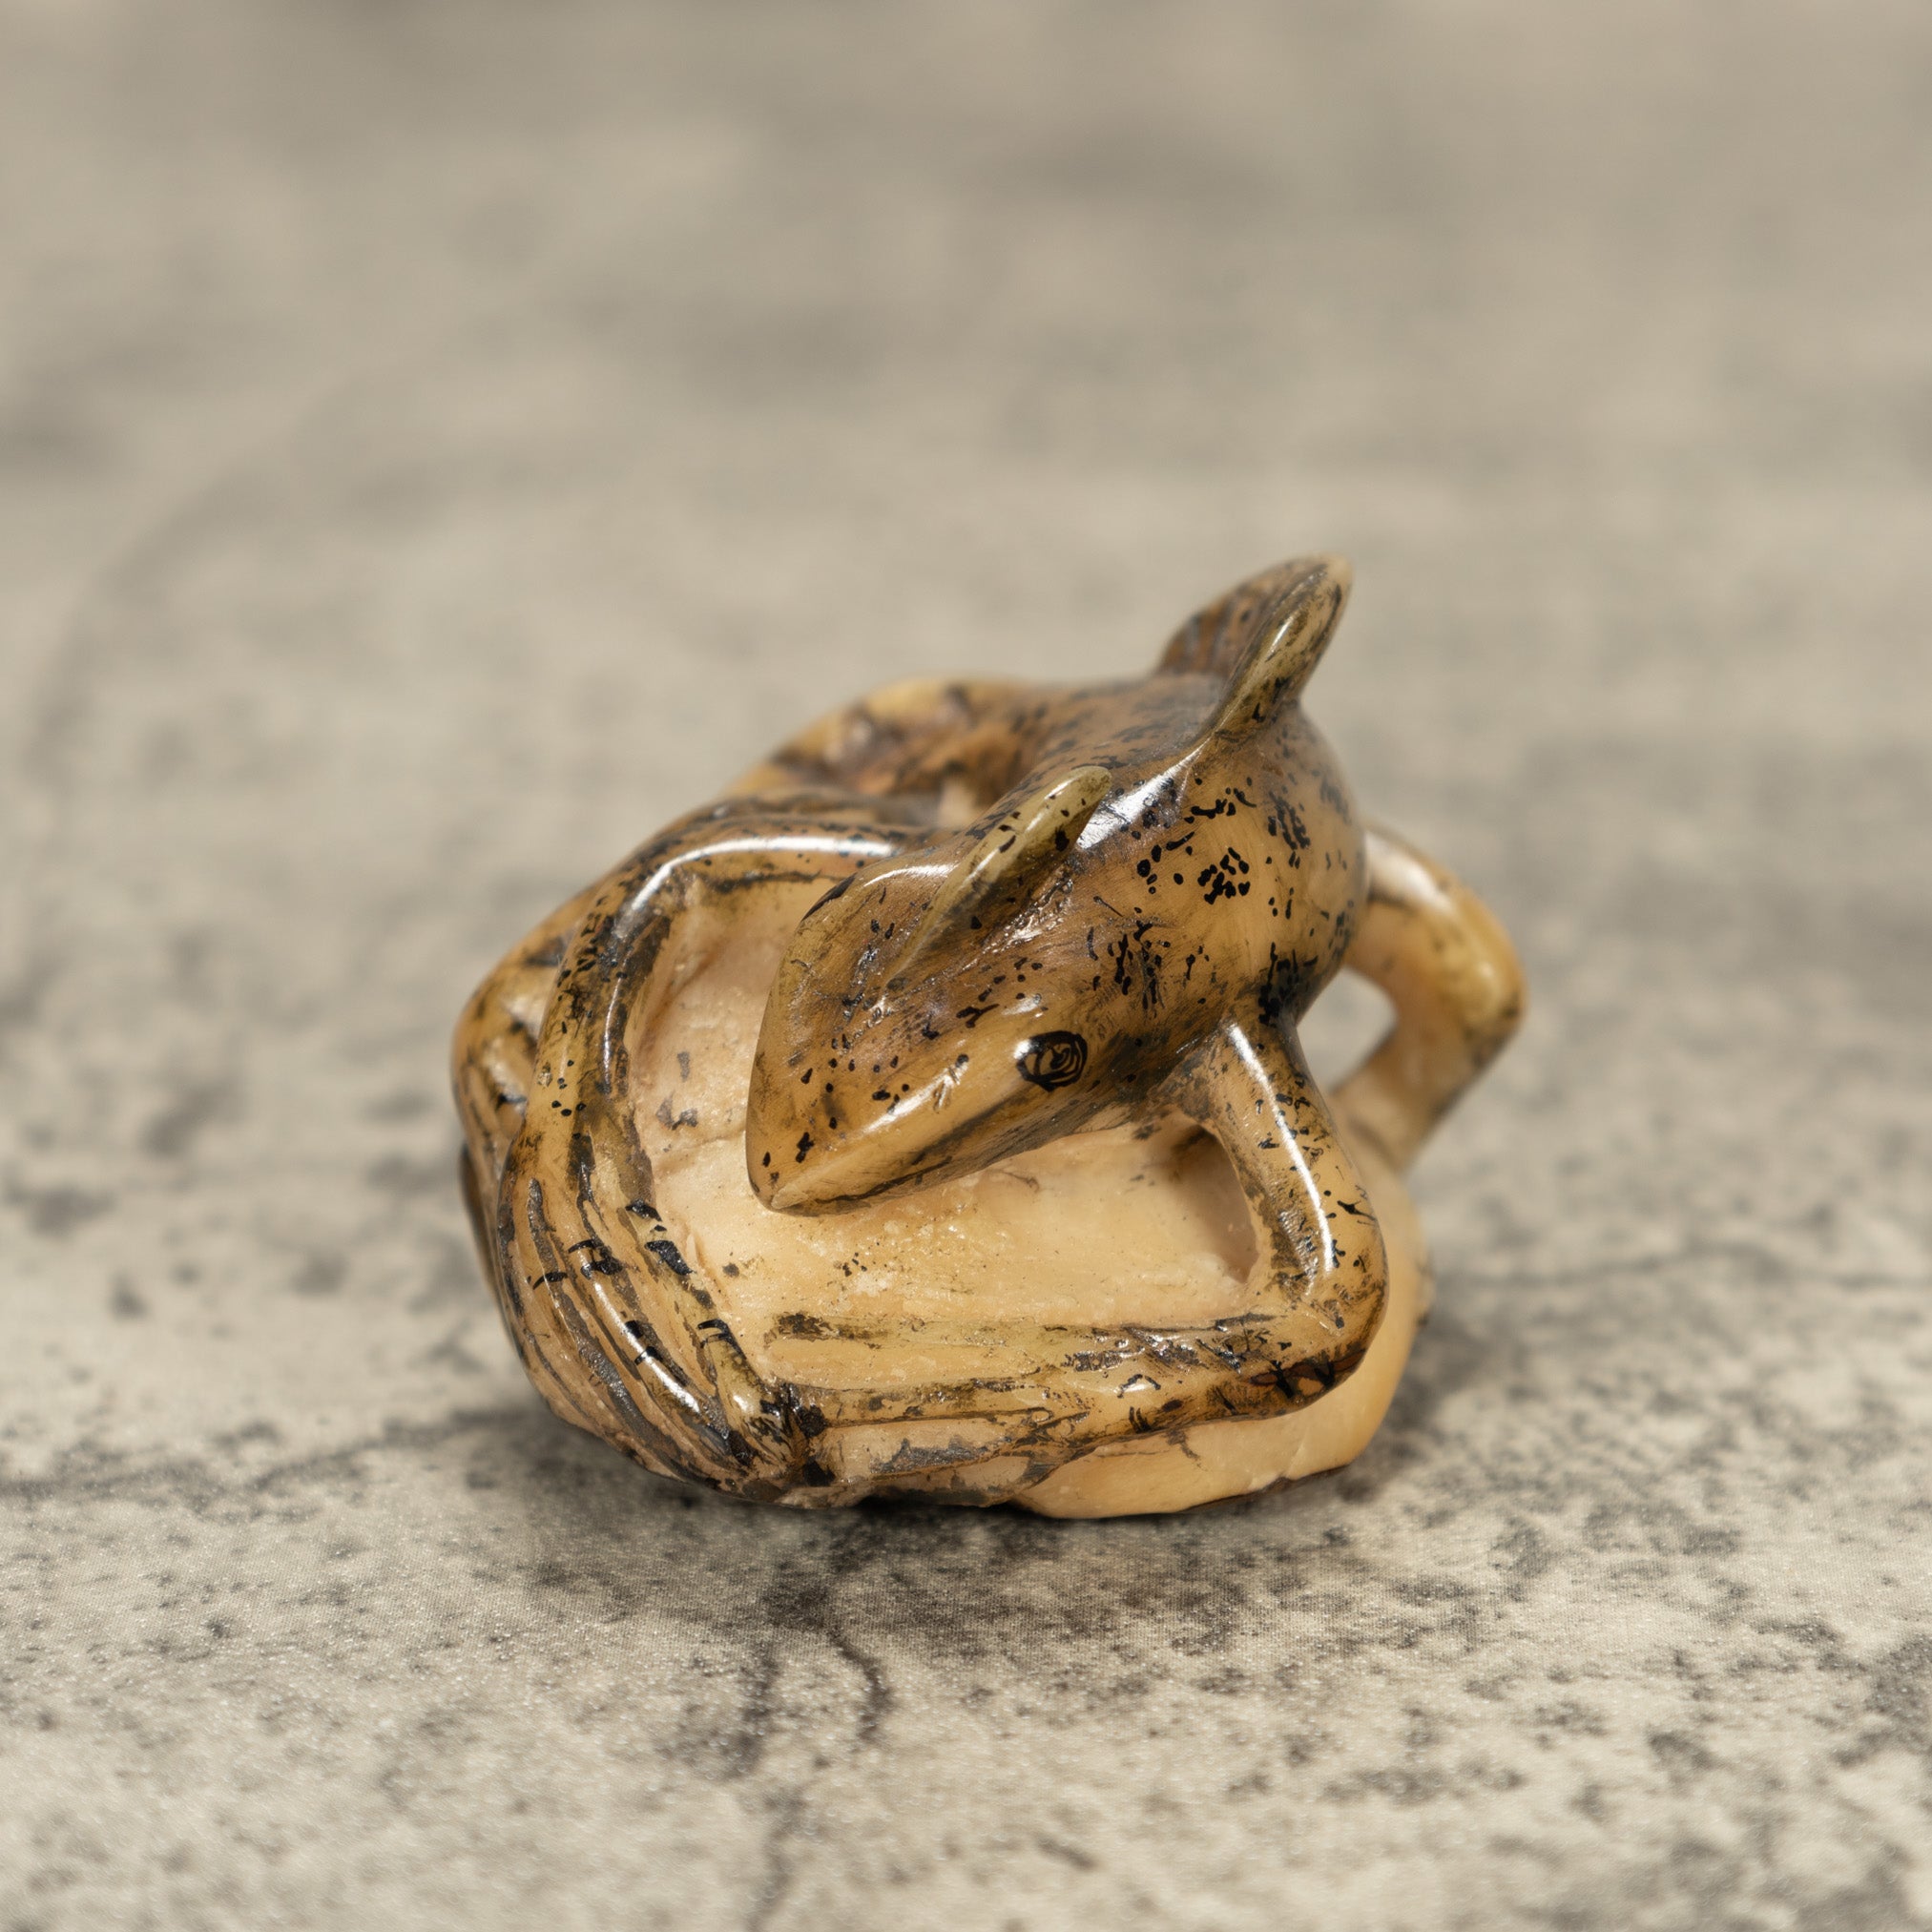 Jesus Lizard Tagua Nut Carving